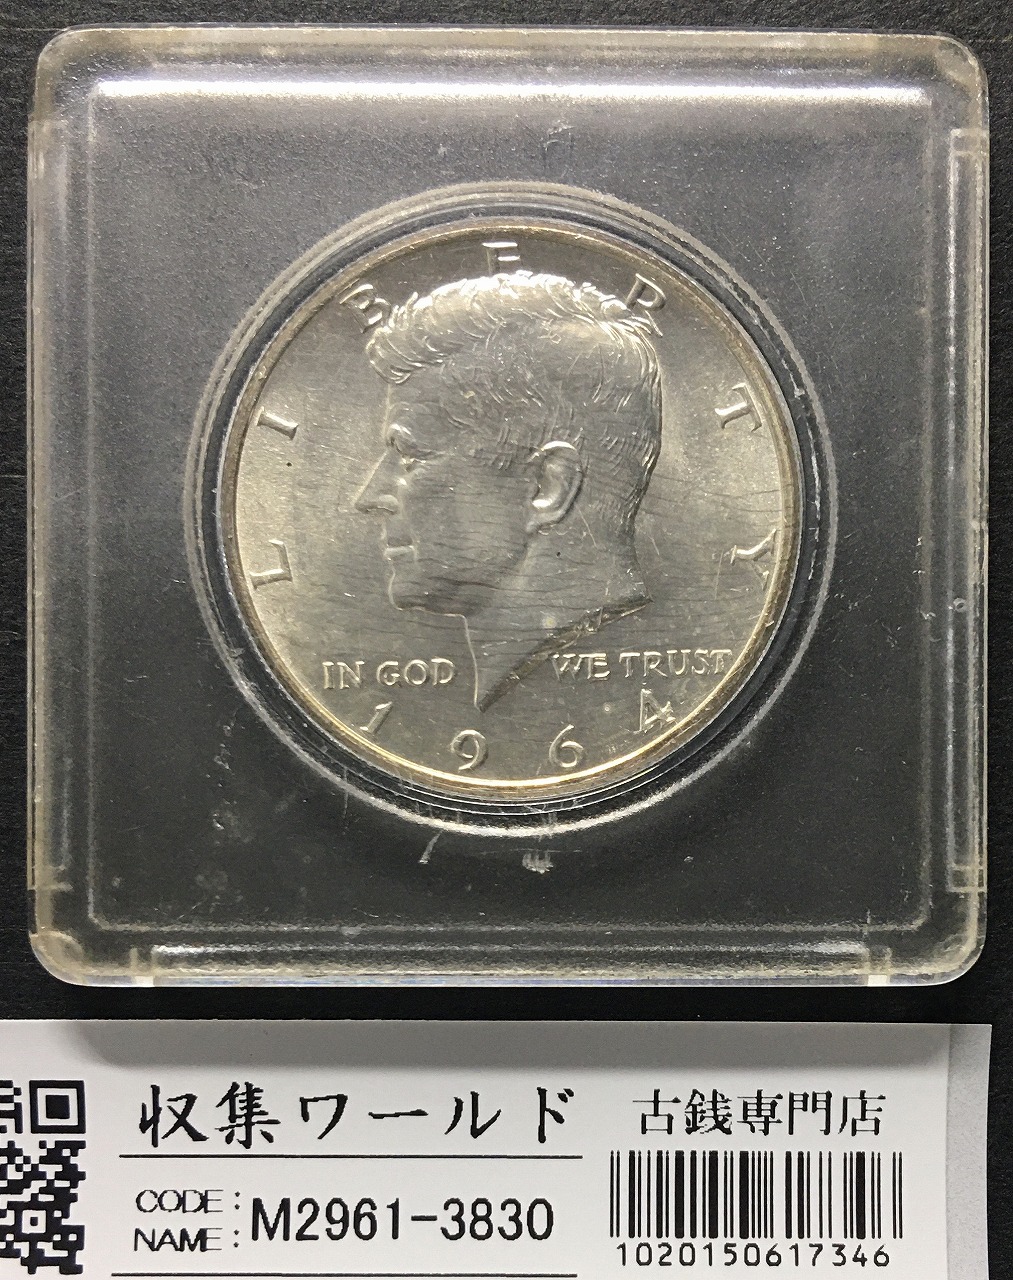 アメリカ 50セント銀貨 ケネディ ハーフダラー 1964年銘 カプセル入り 未使用